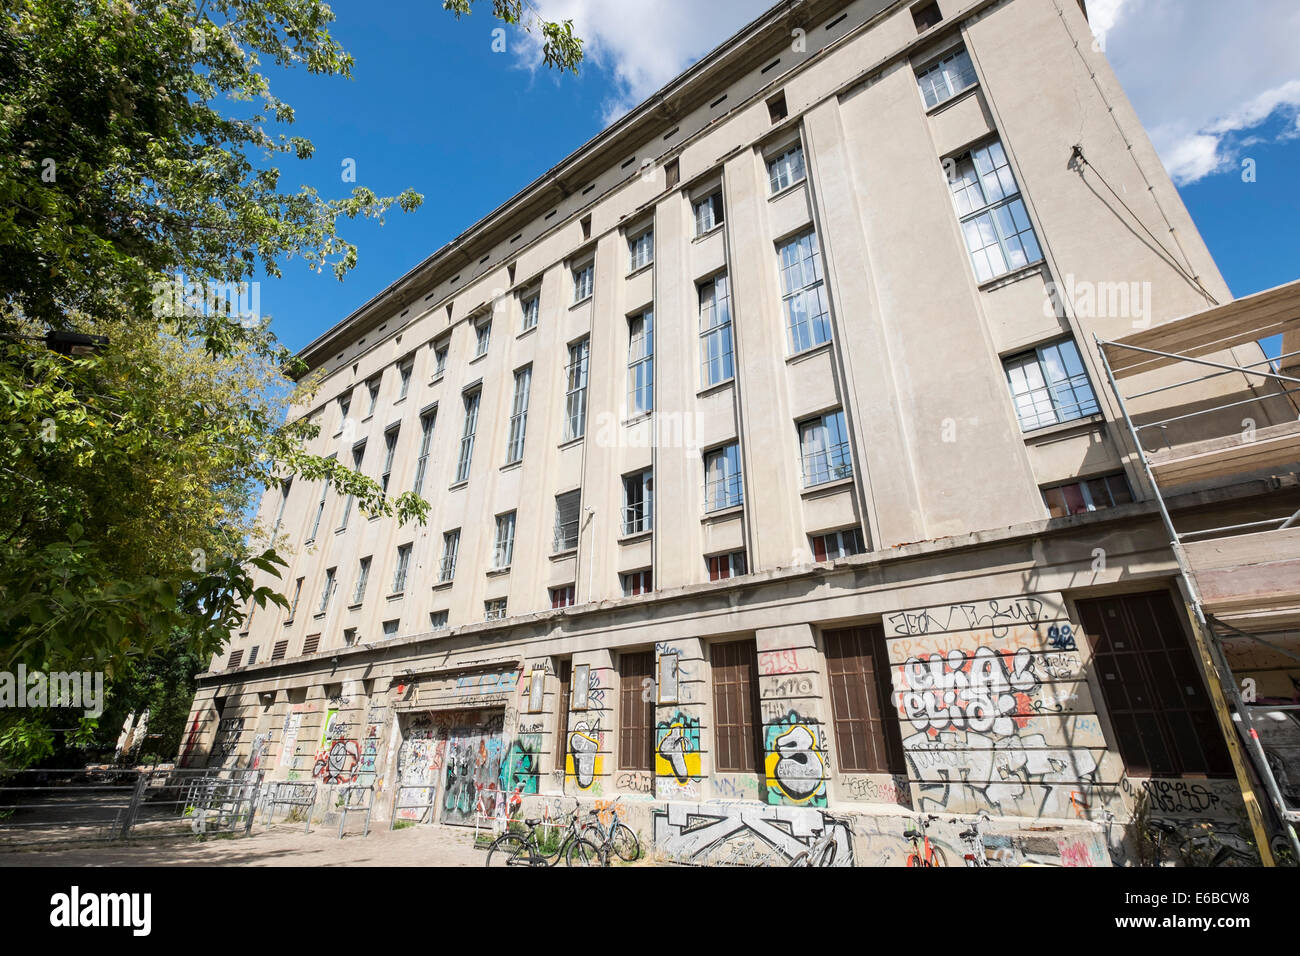 Discothèque Berghain infâme à Berlin Allemagne Banque D'Images